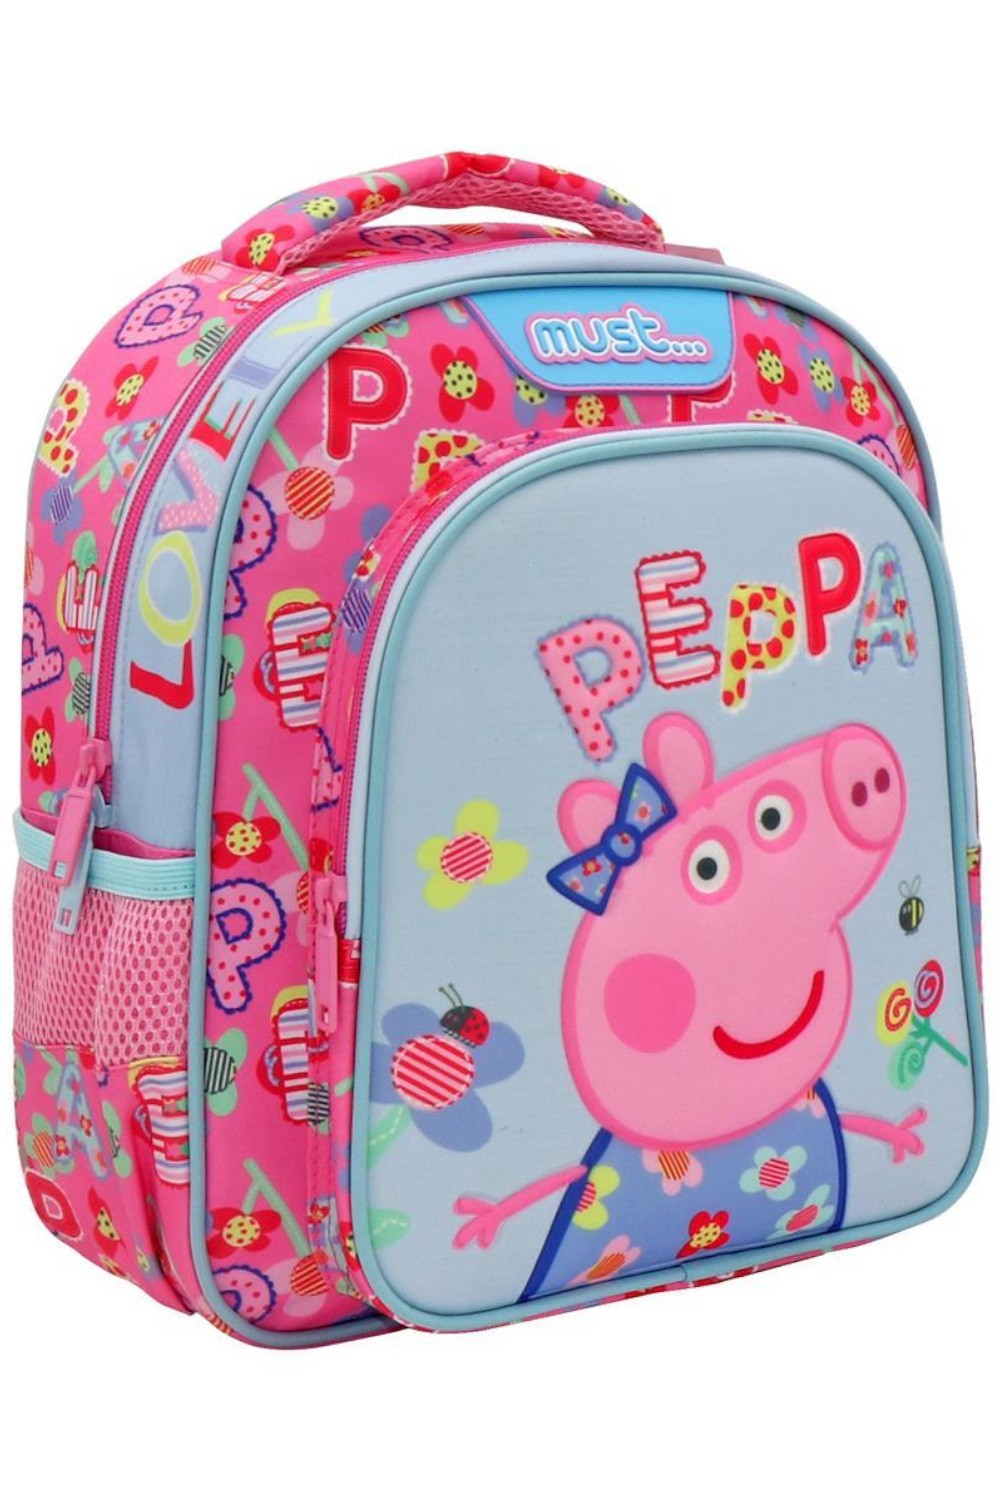 Σχολική Τσάντα Πλάτης Νηπιαγωγείου Peppa Pig Lovely με 2 Θήκες Must 482736